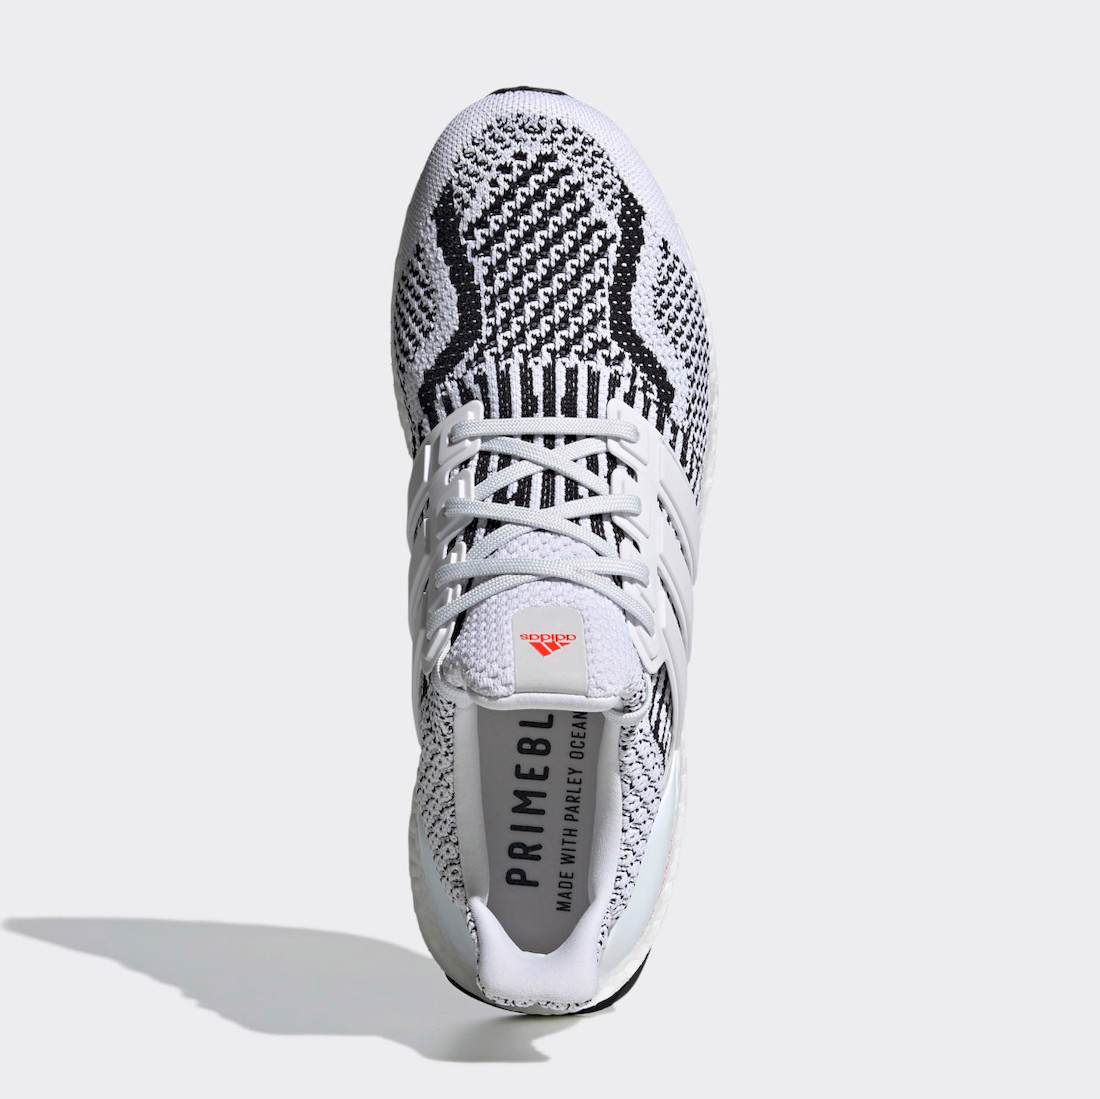 adidas Ultra Boost 5.0 DNA Zebra G54960 Release Date Info